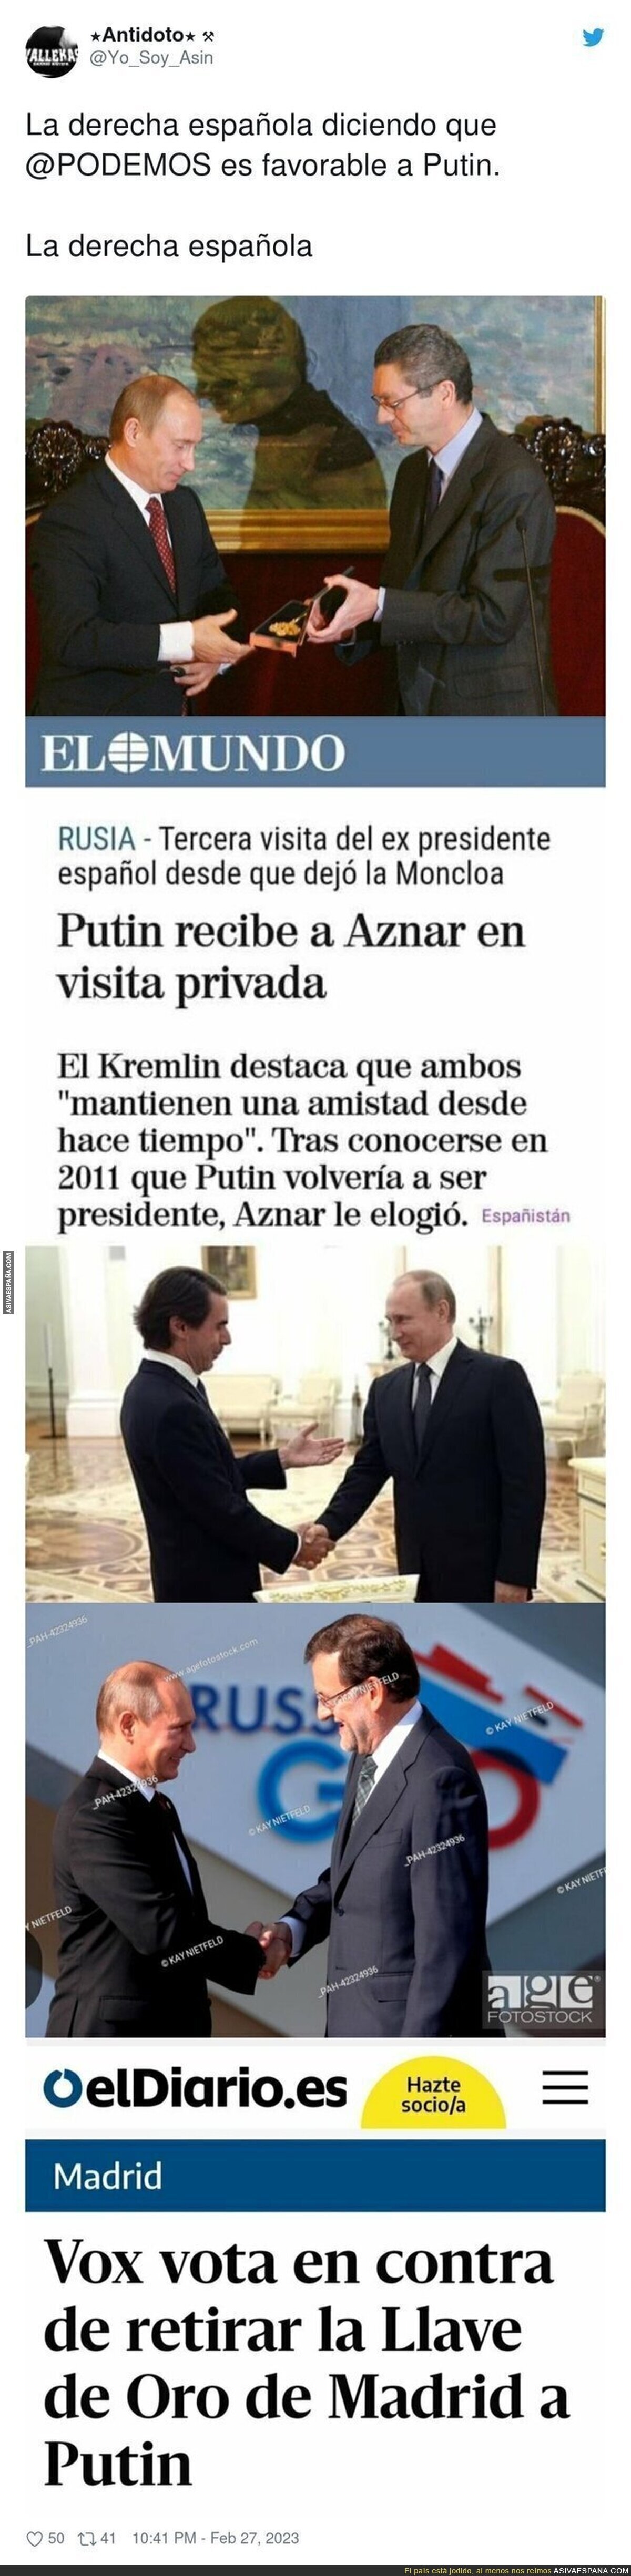 La derecha española es más próxima a Putin de lo que te hacen creer